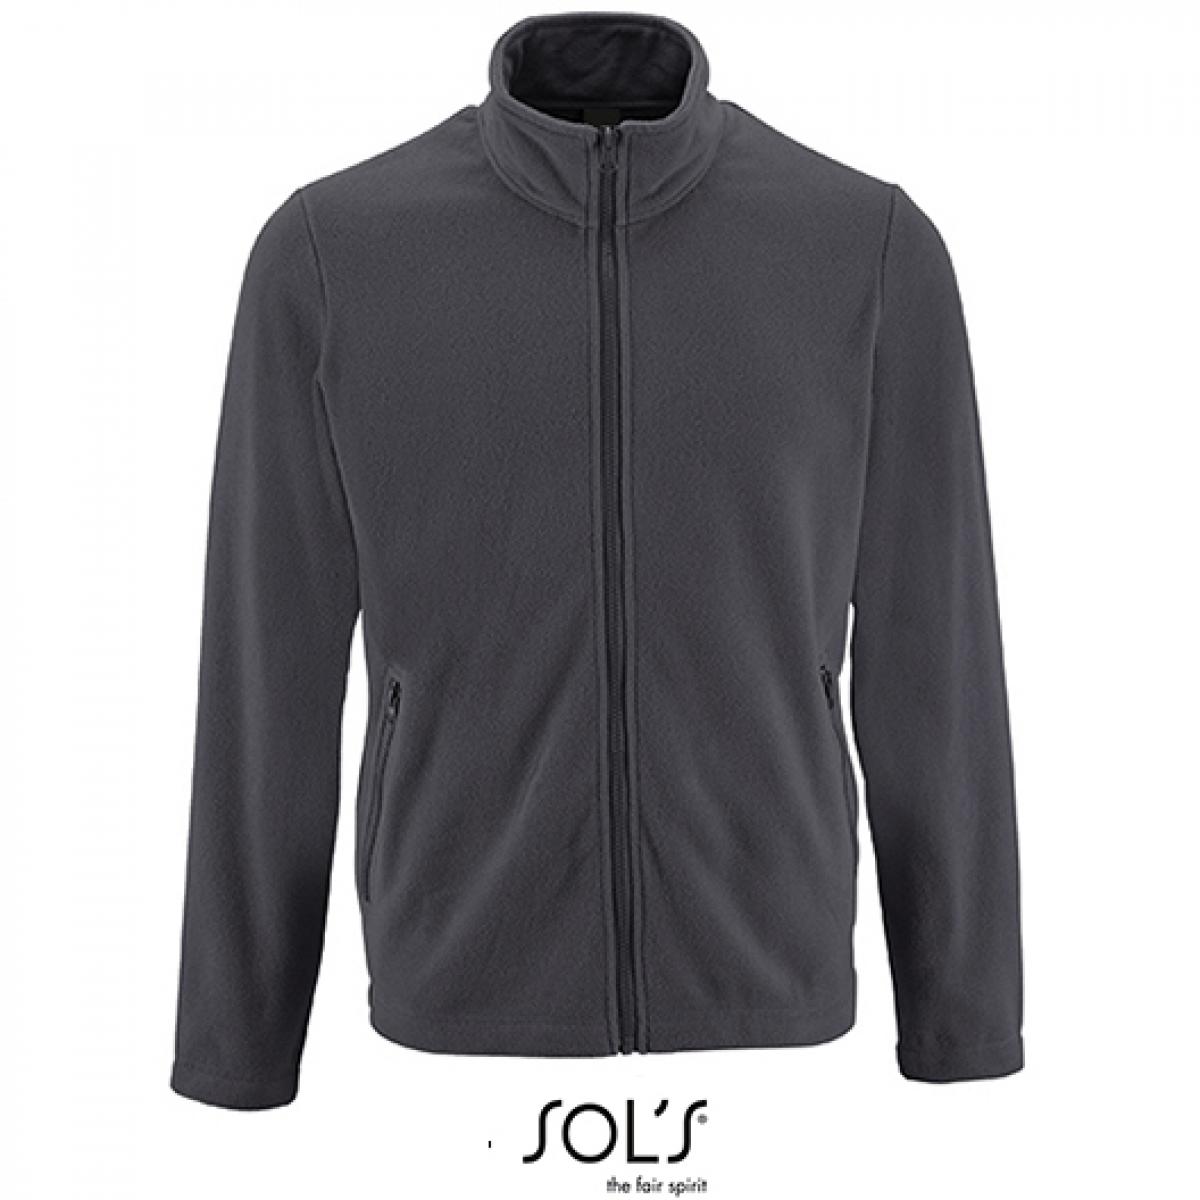 Hersteller: SOLs Herstellernummer: 02093 Artikelbezeichnung: Herren Plain Fleece Jacket Norman Farbe: Charcoal Grey (Solid)